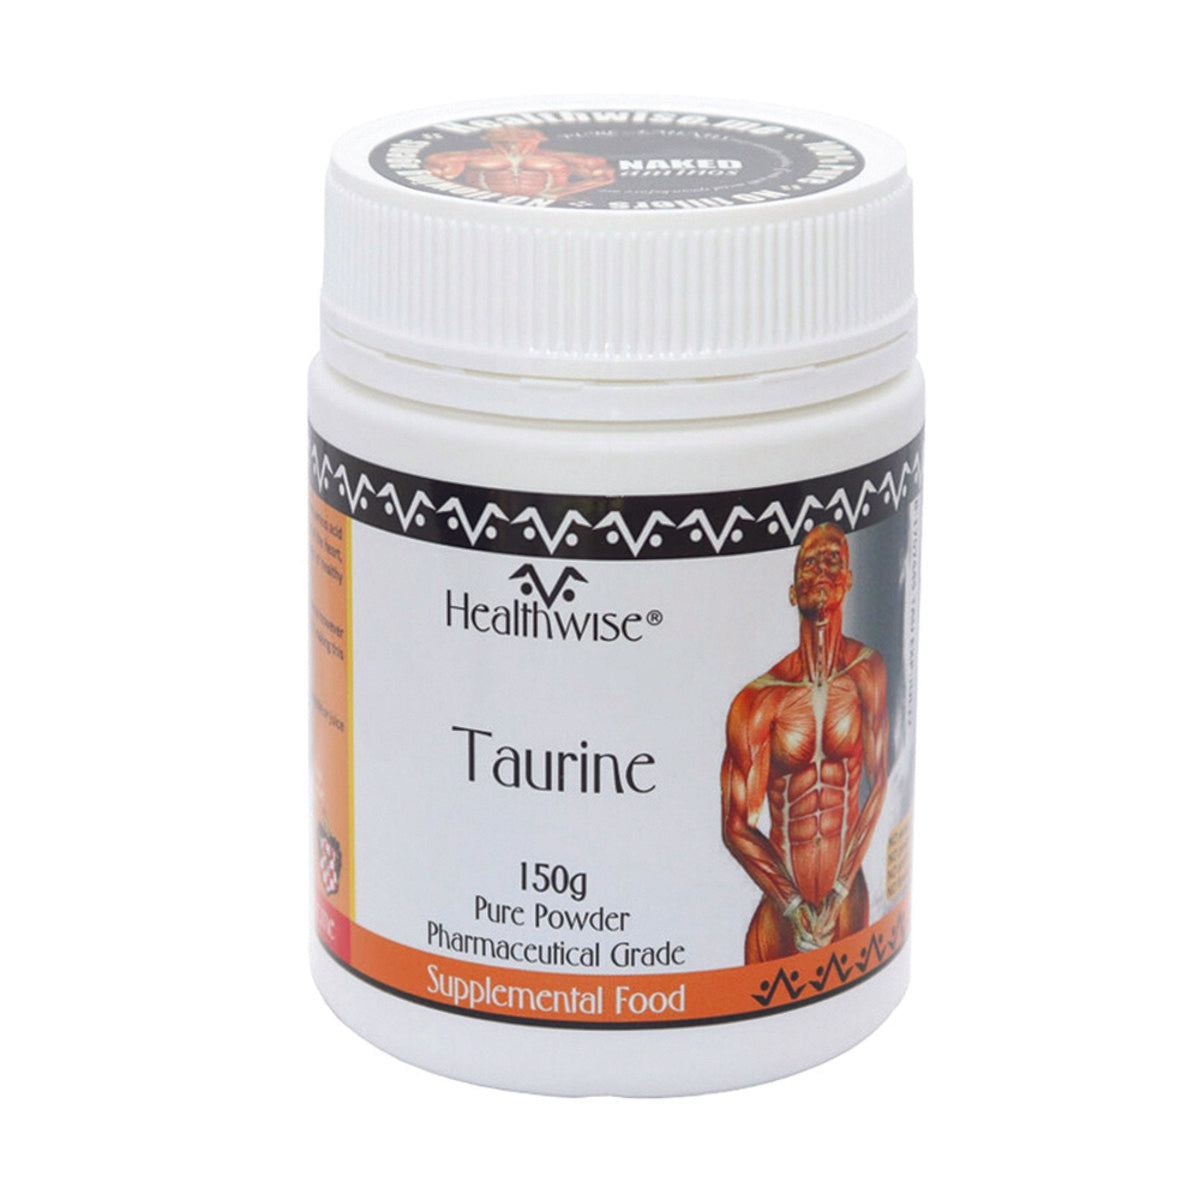 Healthwise Taurine 150G Powder